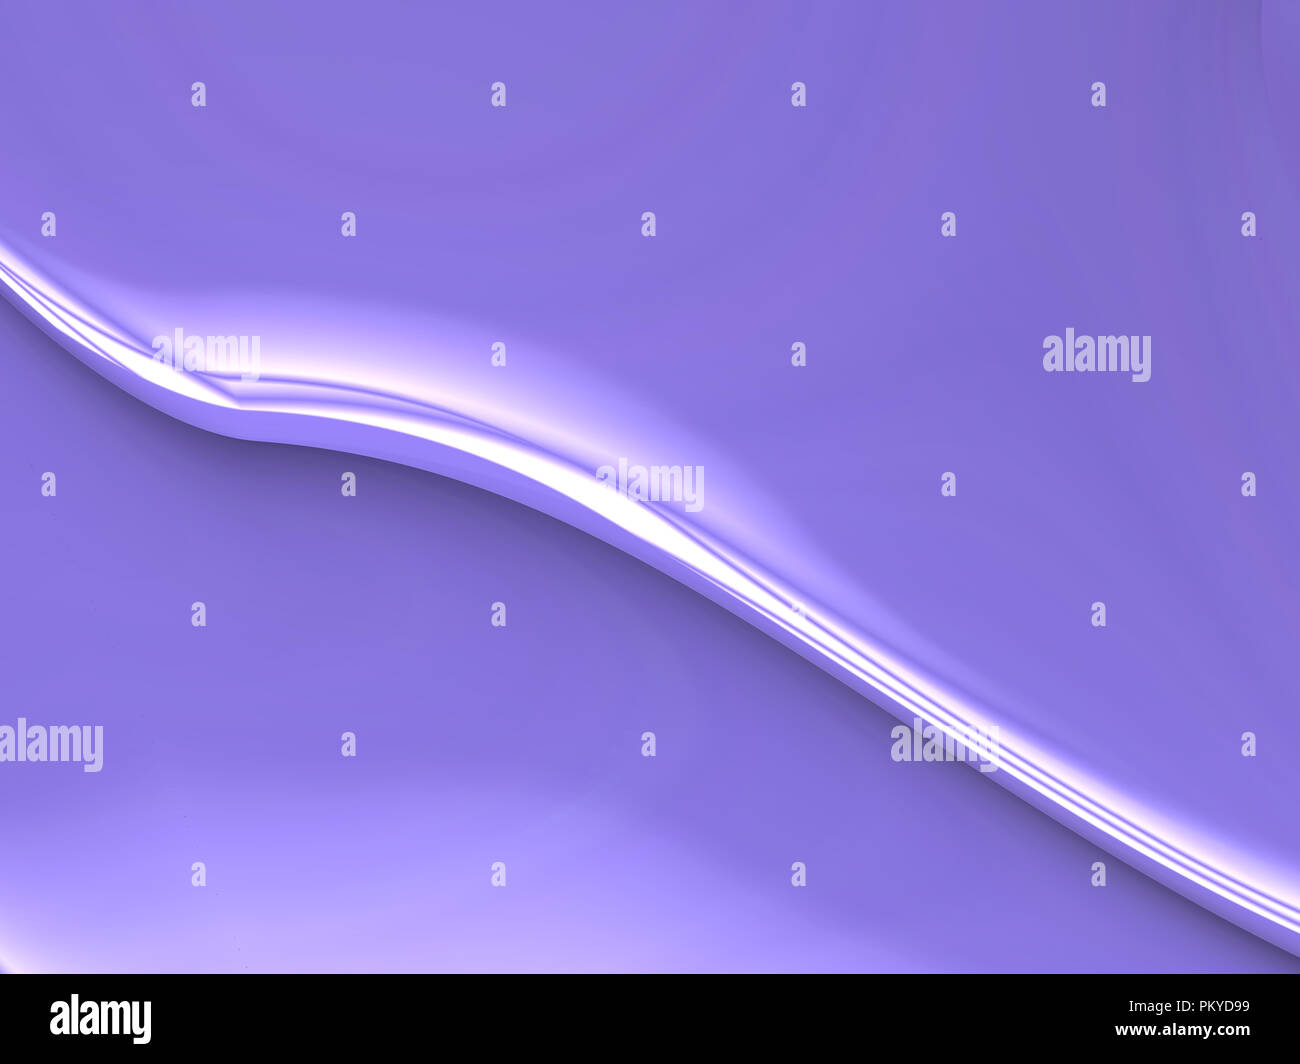 Einfache Zusammenfassung Hintergrund Design von feinen blassen lila Farbe mit weißen diagonale Streifen perfekt für Medien Präsentation oder Desktop wallaper Stockfoto